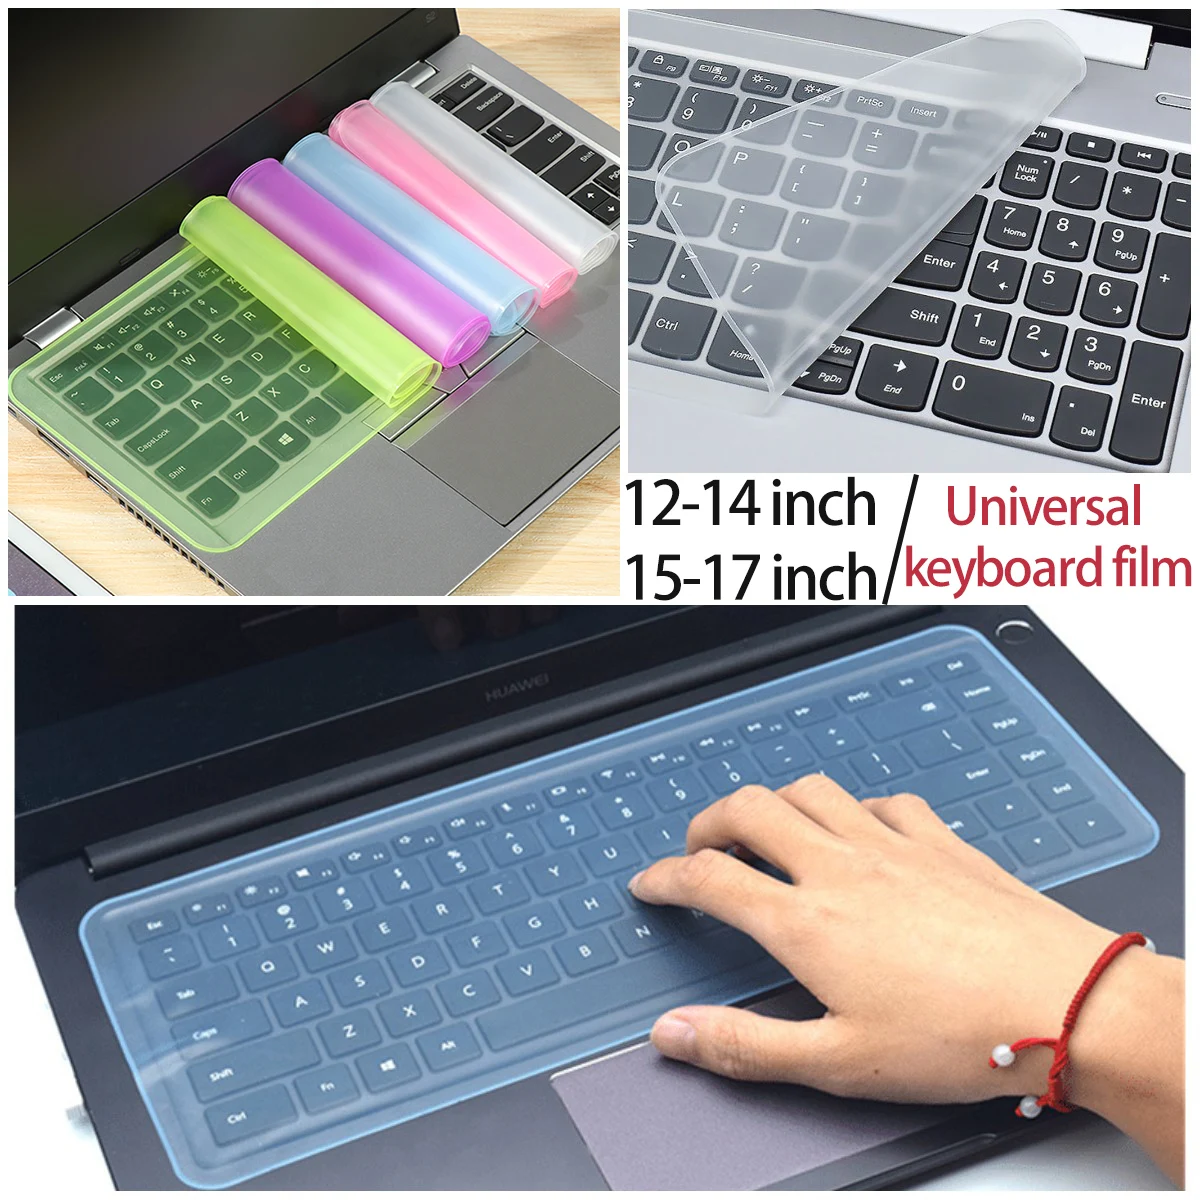 

Funda protectora Universal ordenador , Protector teclado resistente al agua, a prueba de polvo, 12 a 17 pulgadas, para Macbook